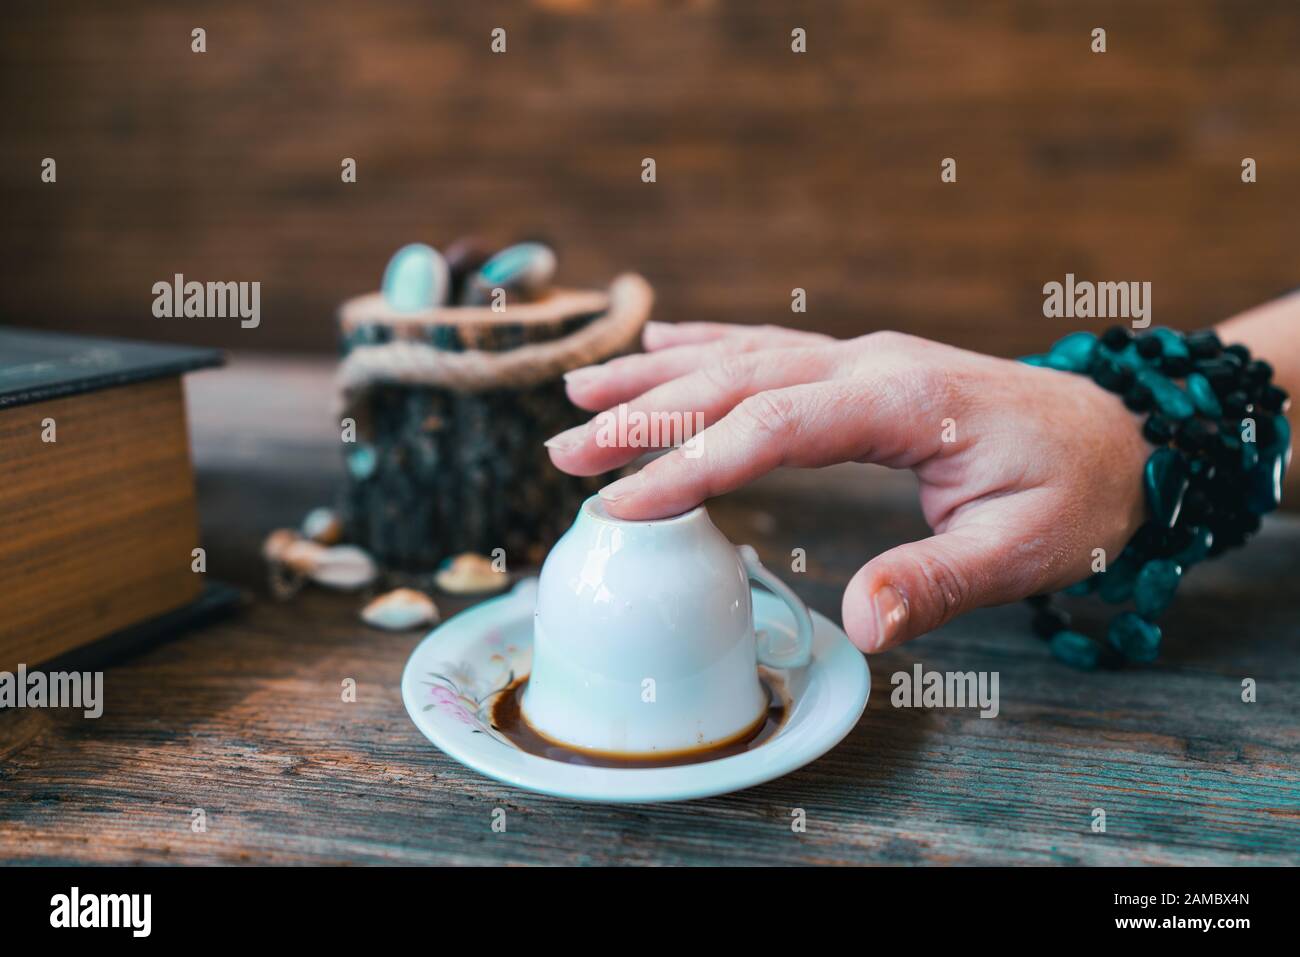 la mujer toch la taza antes de contar fortuna con una taza de café turco Foto de stock